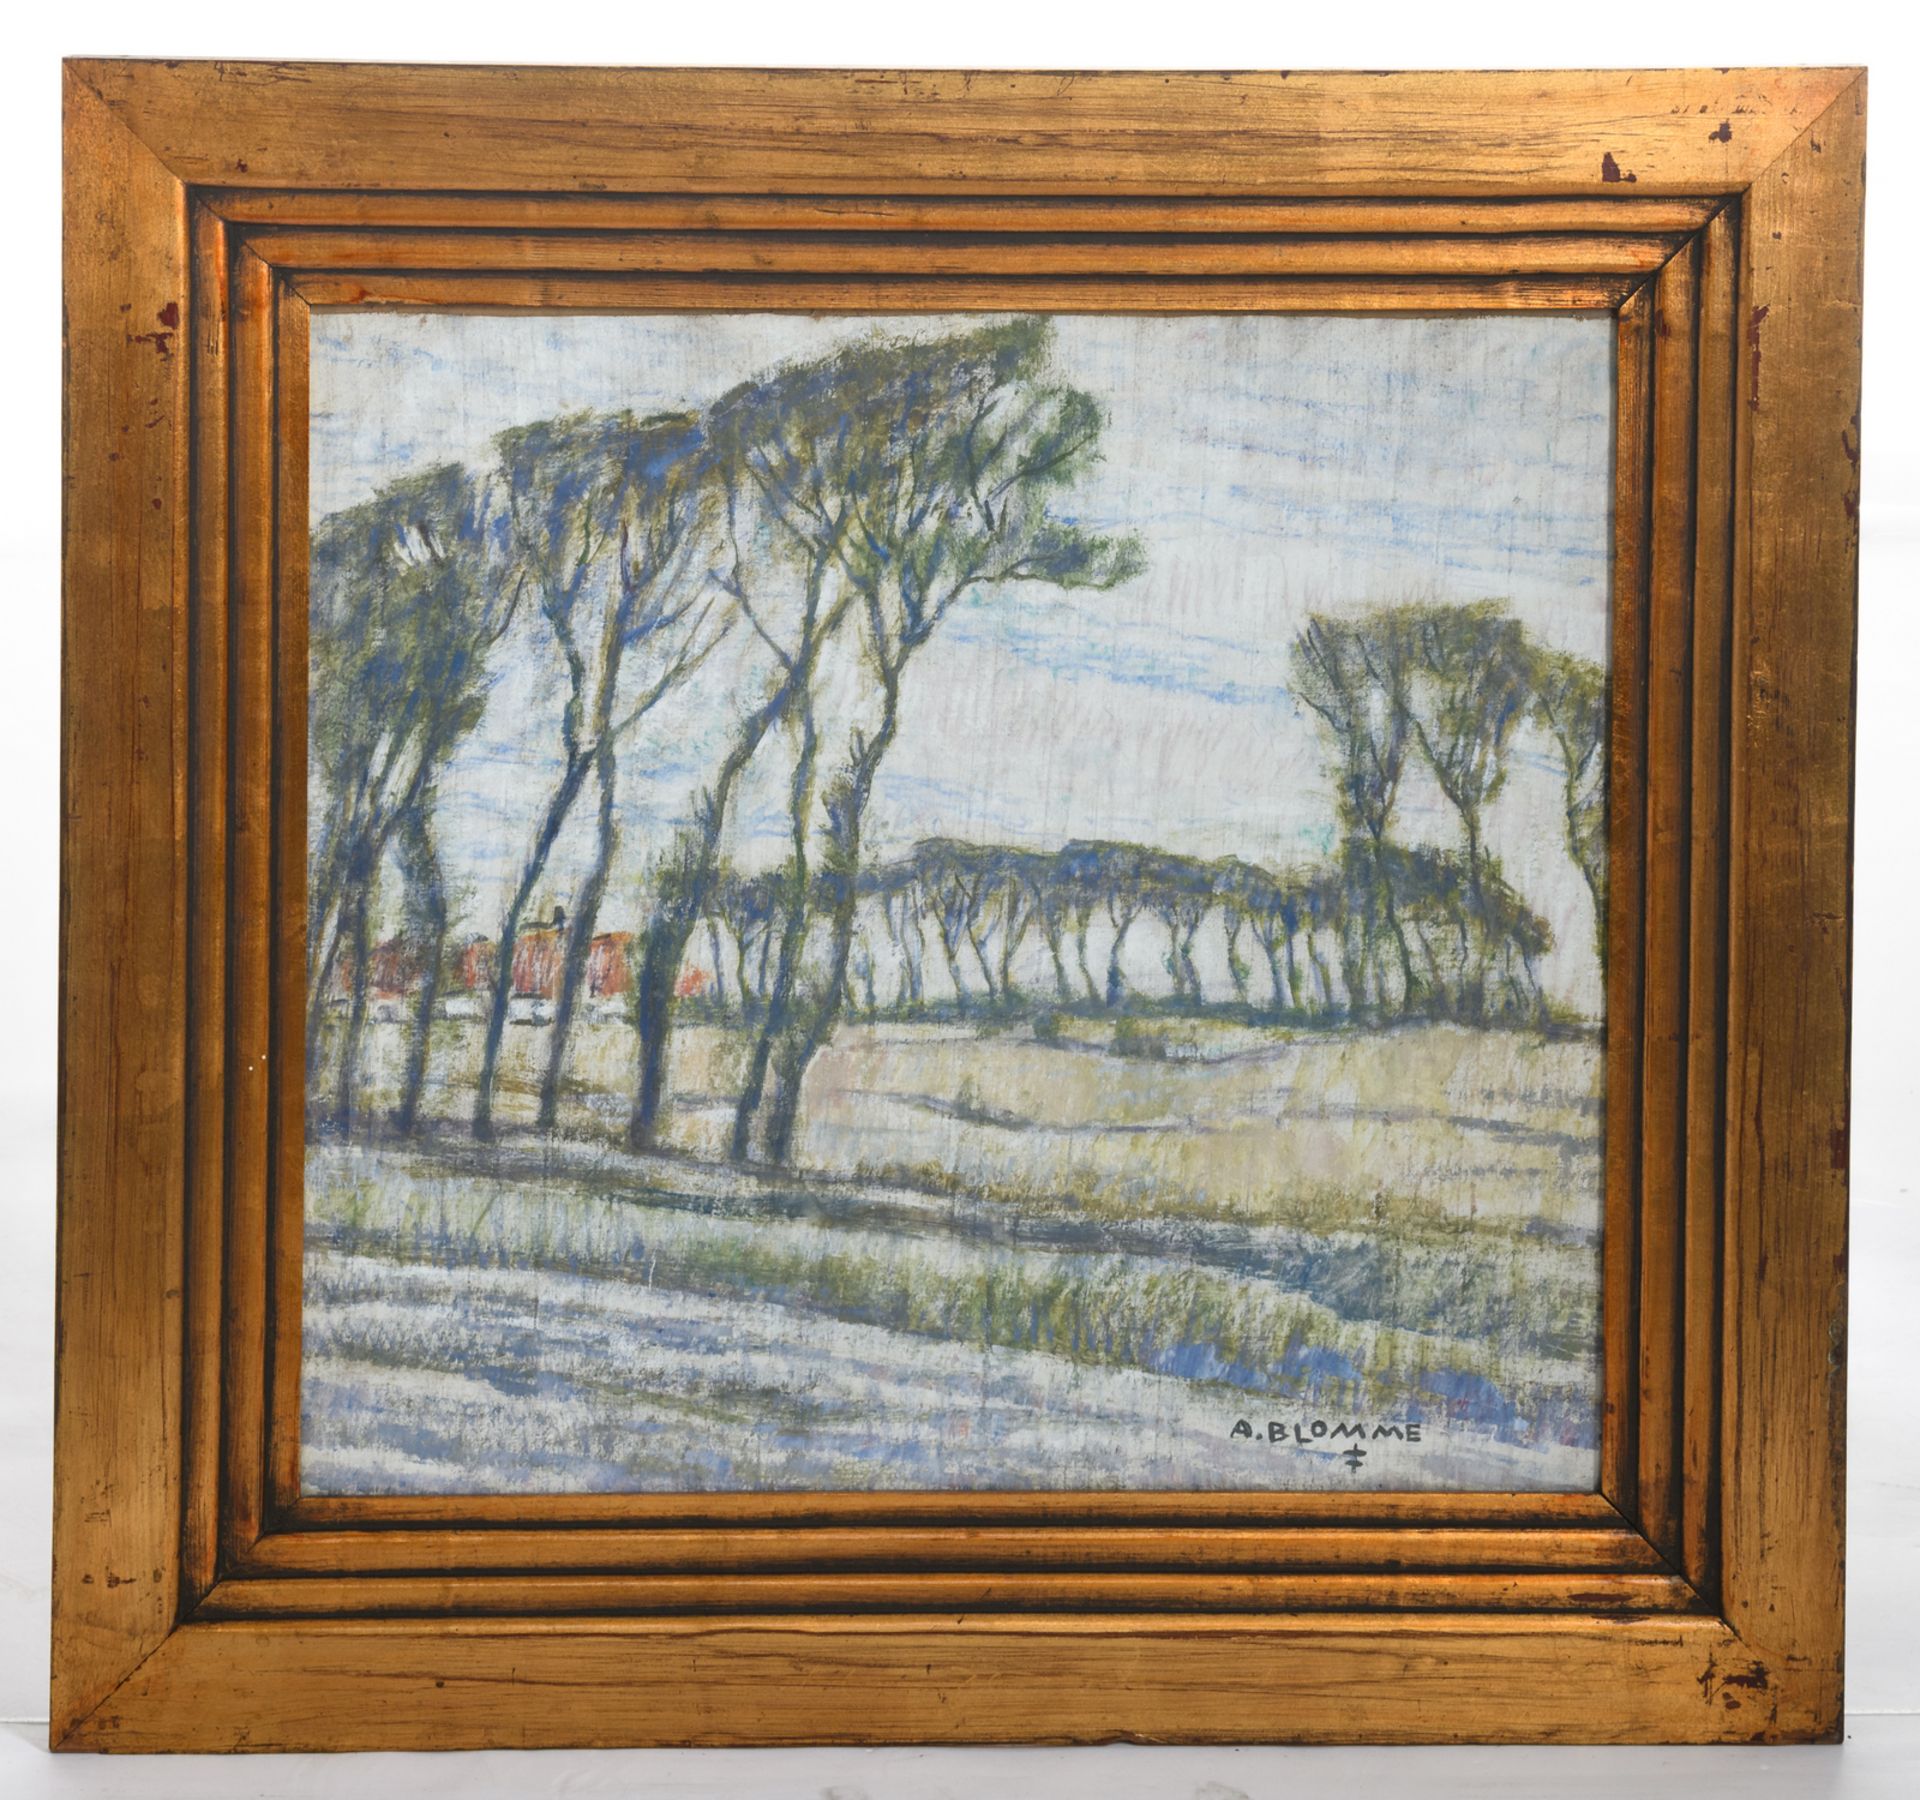 Blomme A., a rural view, oil on canvas, 55 x 58,5 cm - Bild 2 aus 4